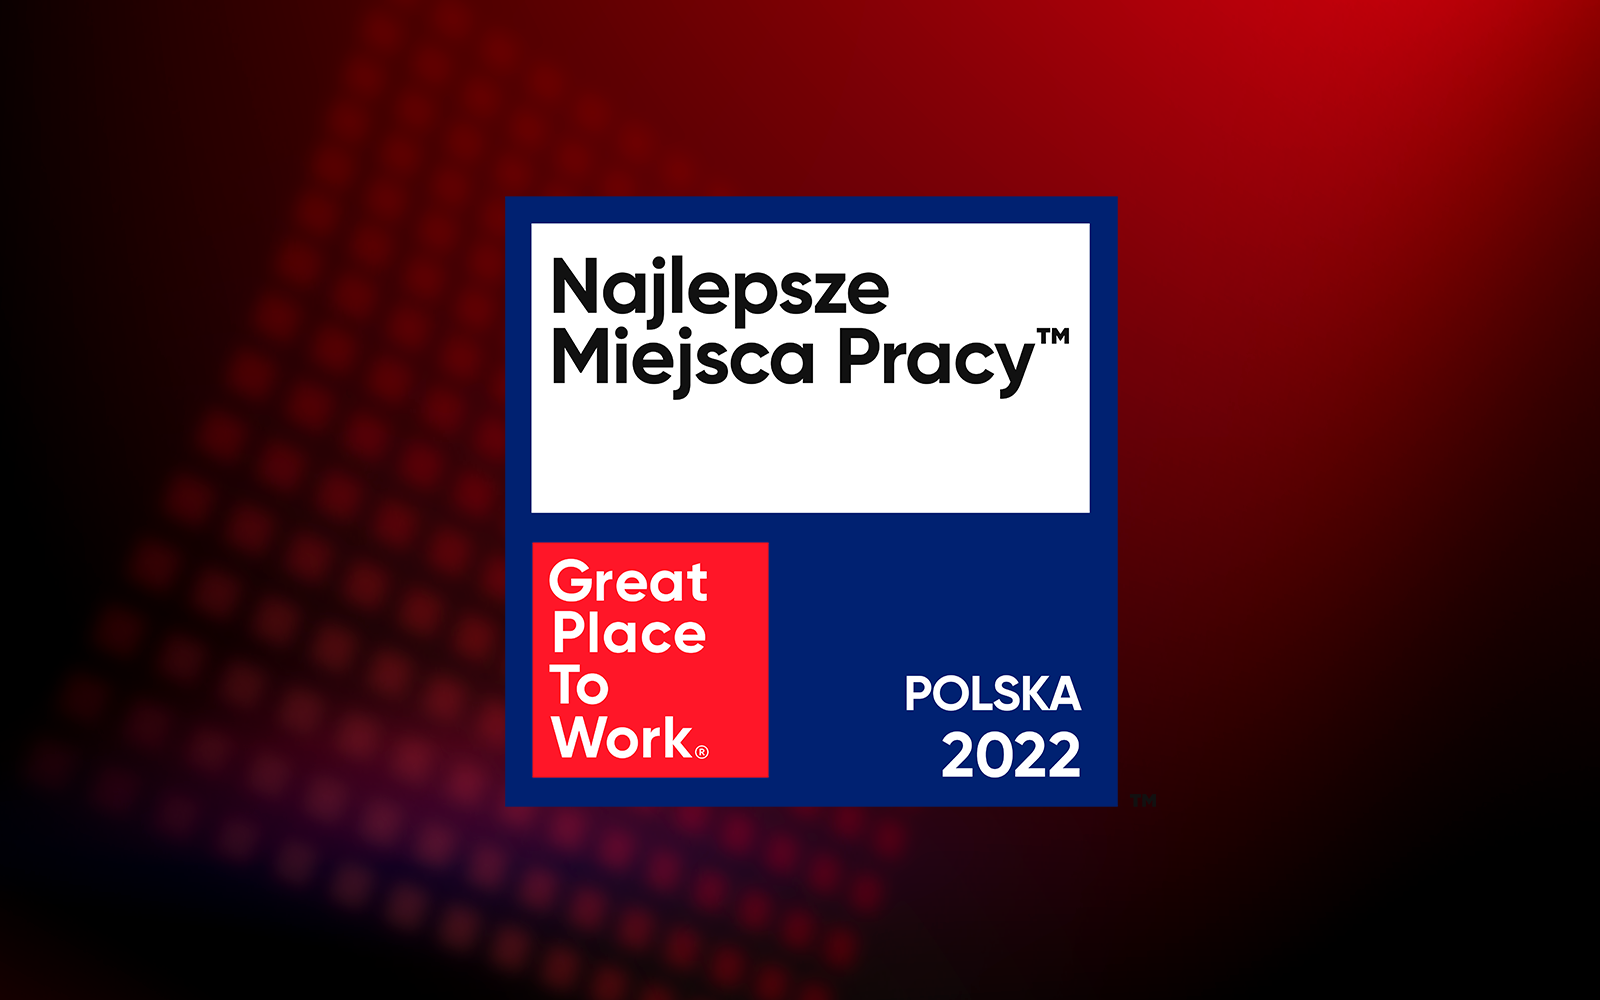 Great Place to Work® ogłosił listę Najlepszych Miejsc Pracy™ Polska 2022. Jest to najdłuższa lista w historii konkursu